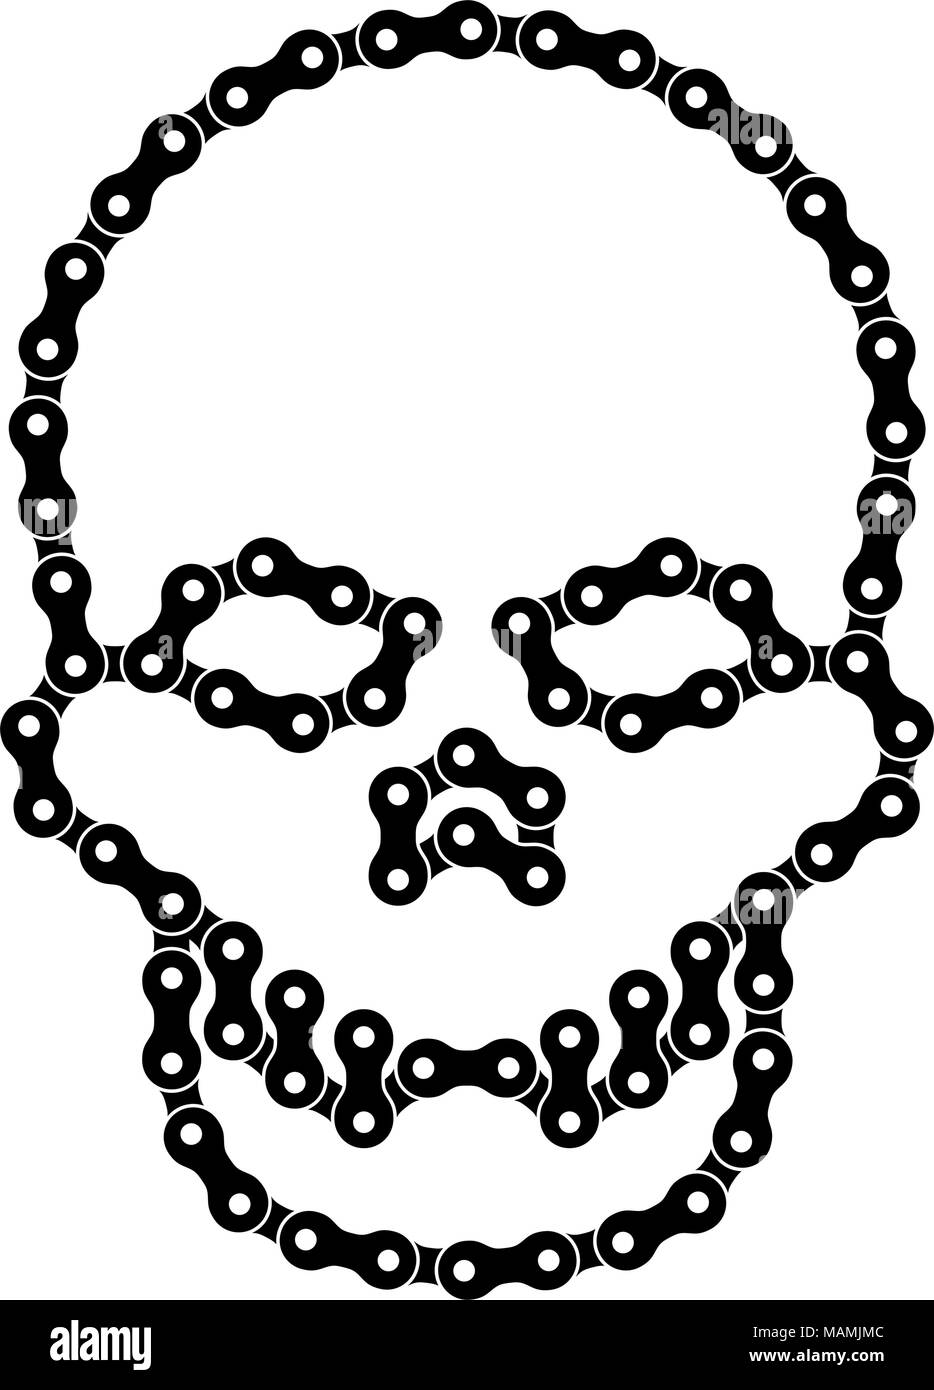 Vektor menschlichen Schädel aus Bike oder Fahrrad Kette. Vektor Schädel oder Death Head Symbol. Schwarz Bike Chain Skull Stock Vektor